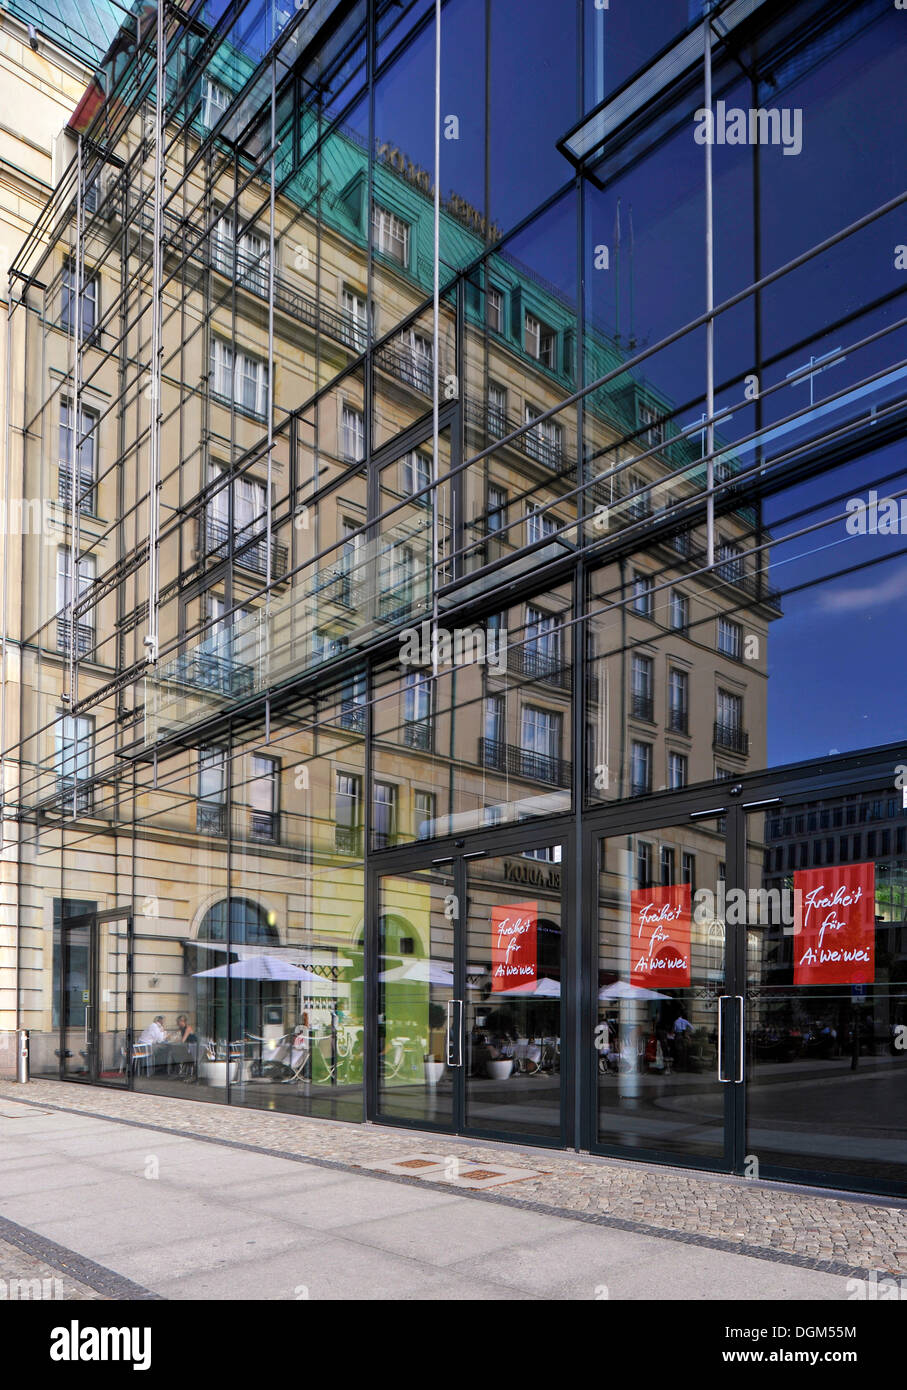 Hotel Adlon se refleja en la fachada de cristal de la Academia de Artes, Unter den Linden, el distrito Mitte, Berlin Foto de stock